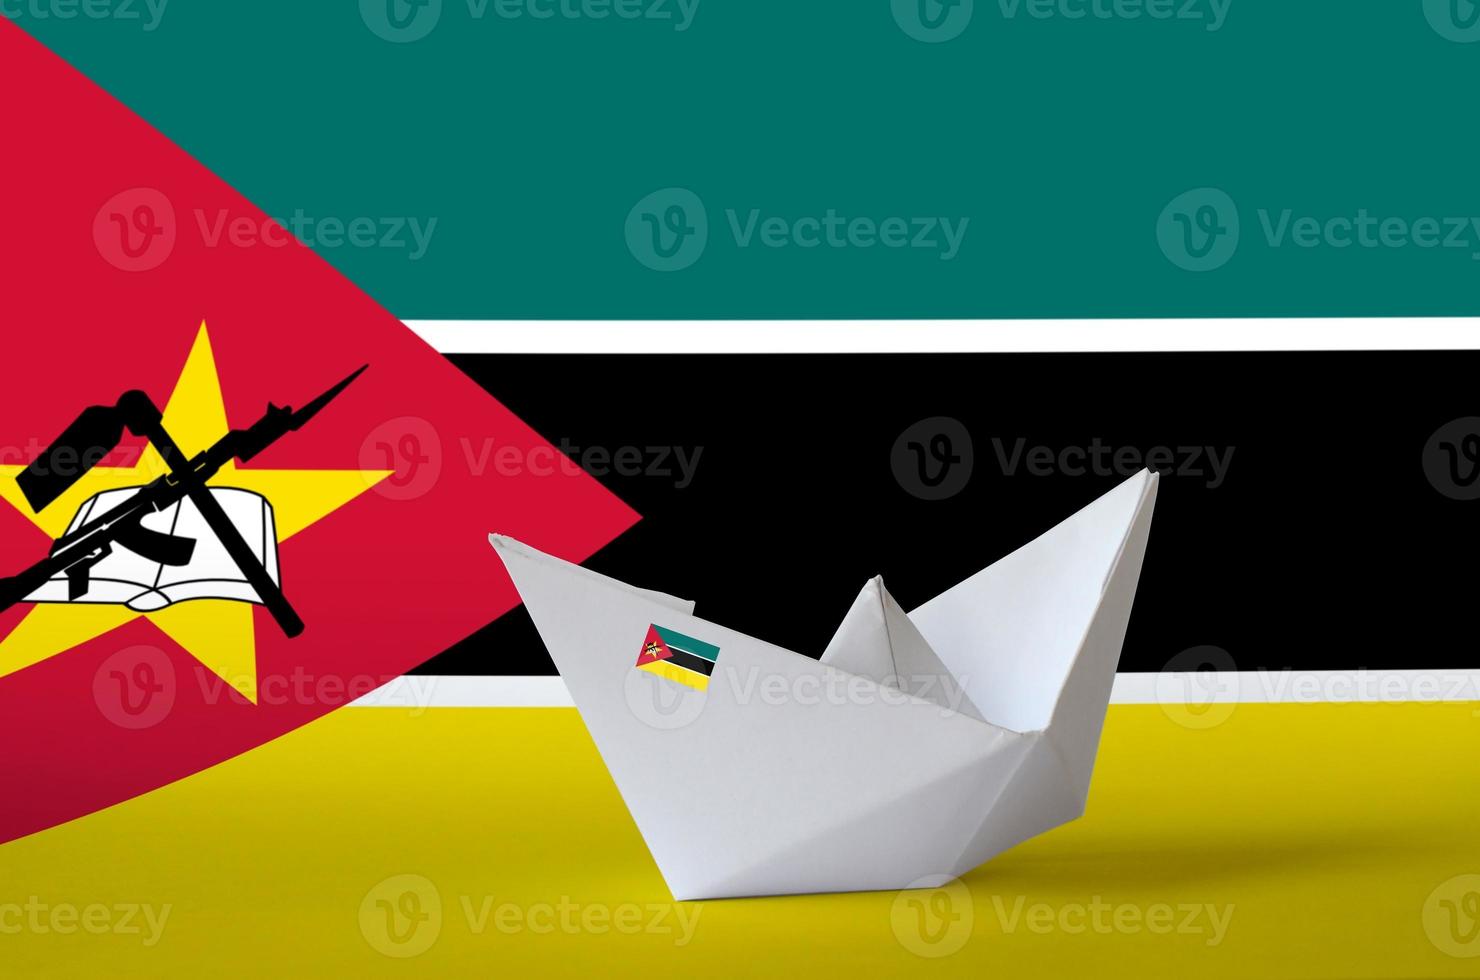 mosambik flagge auf papier origami schiff nahaufnahme dargestellt. handgemachtes kunstkonzept foto